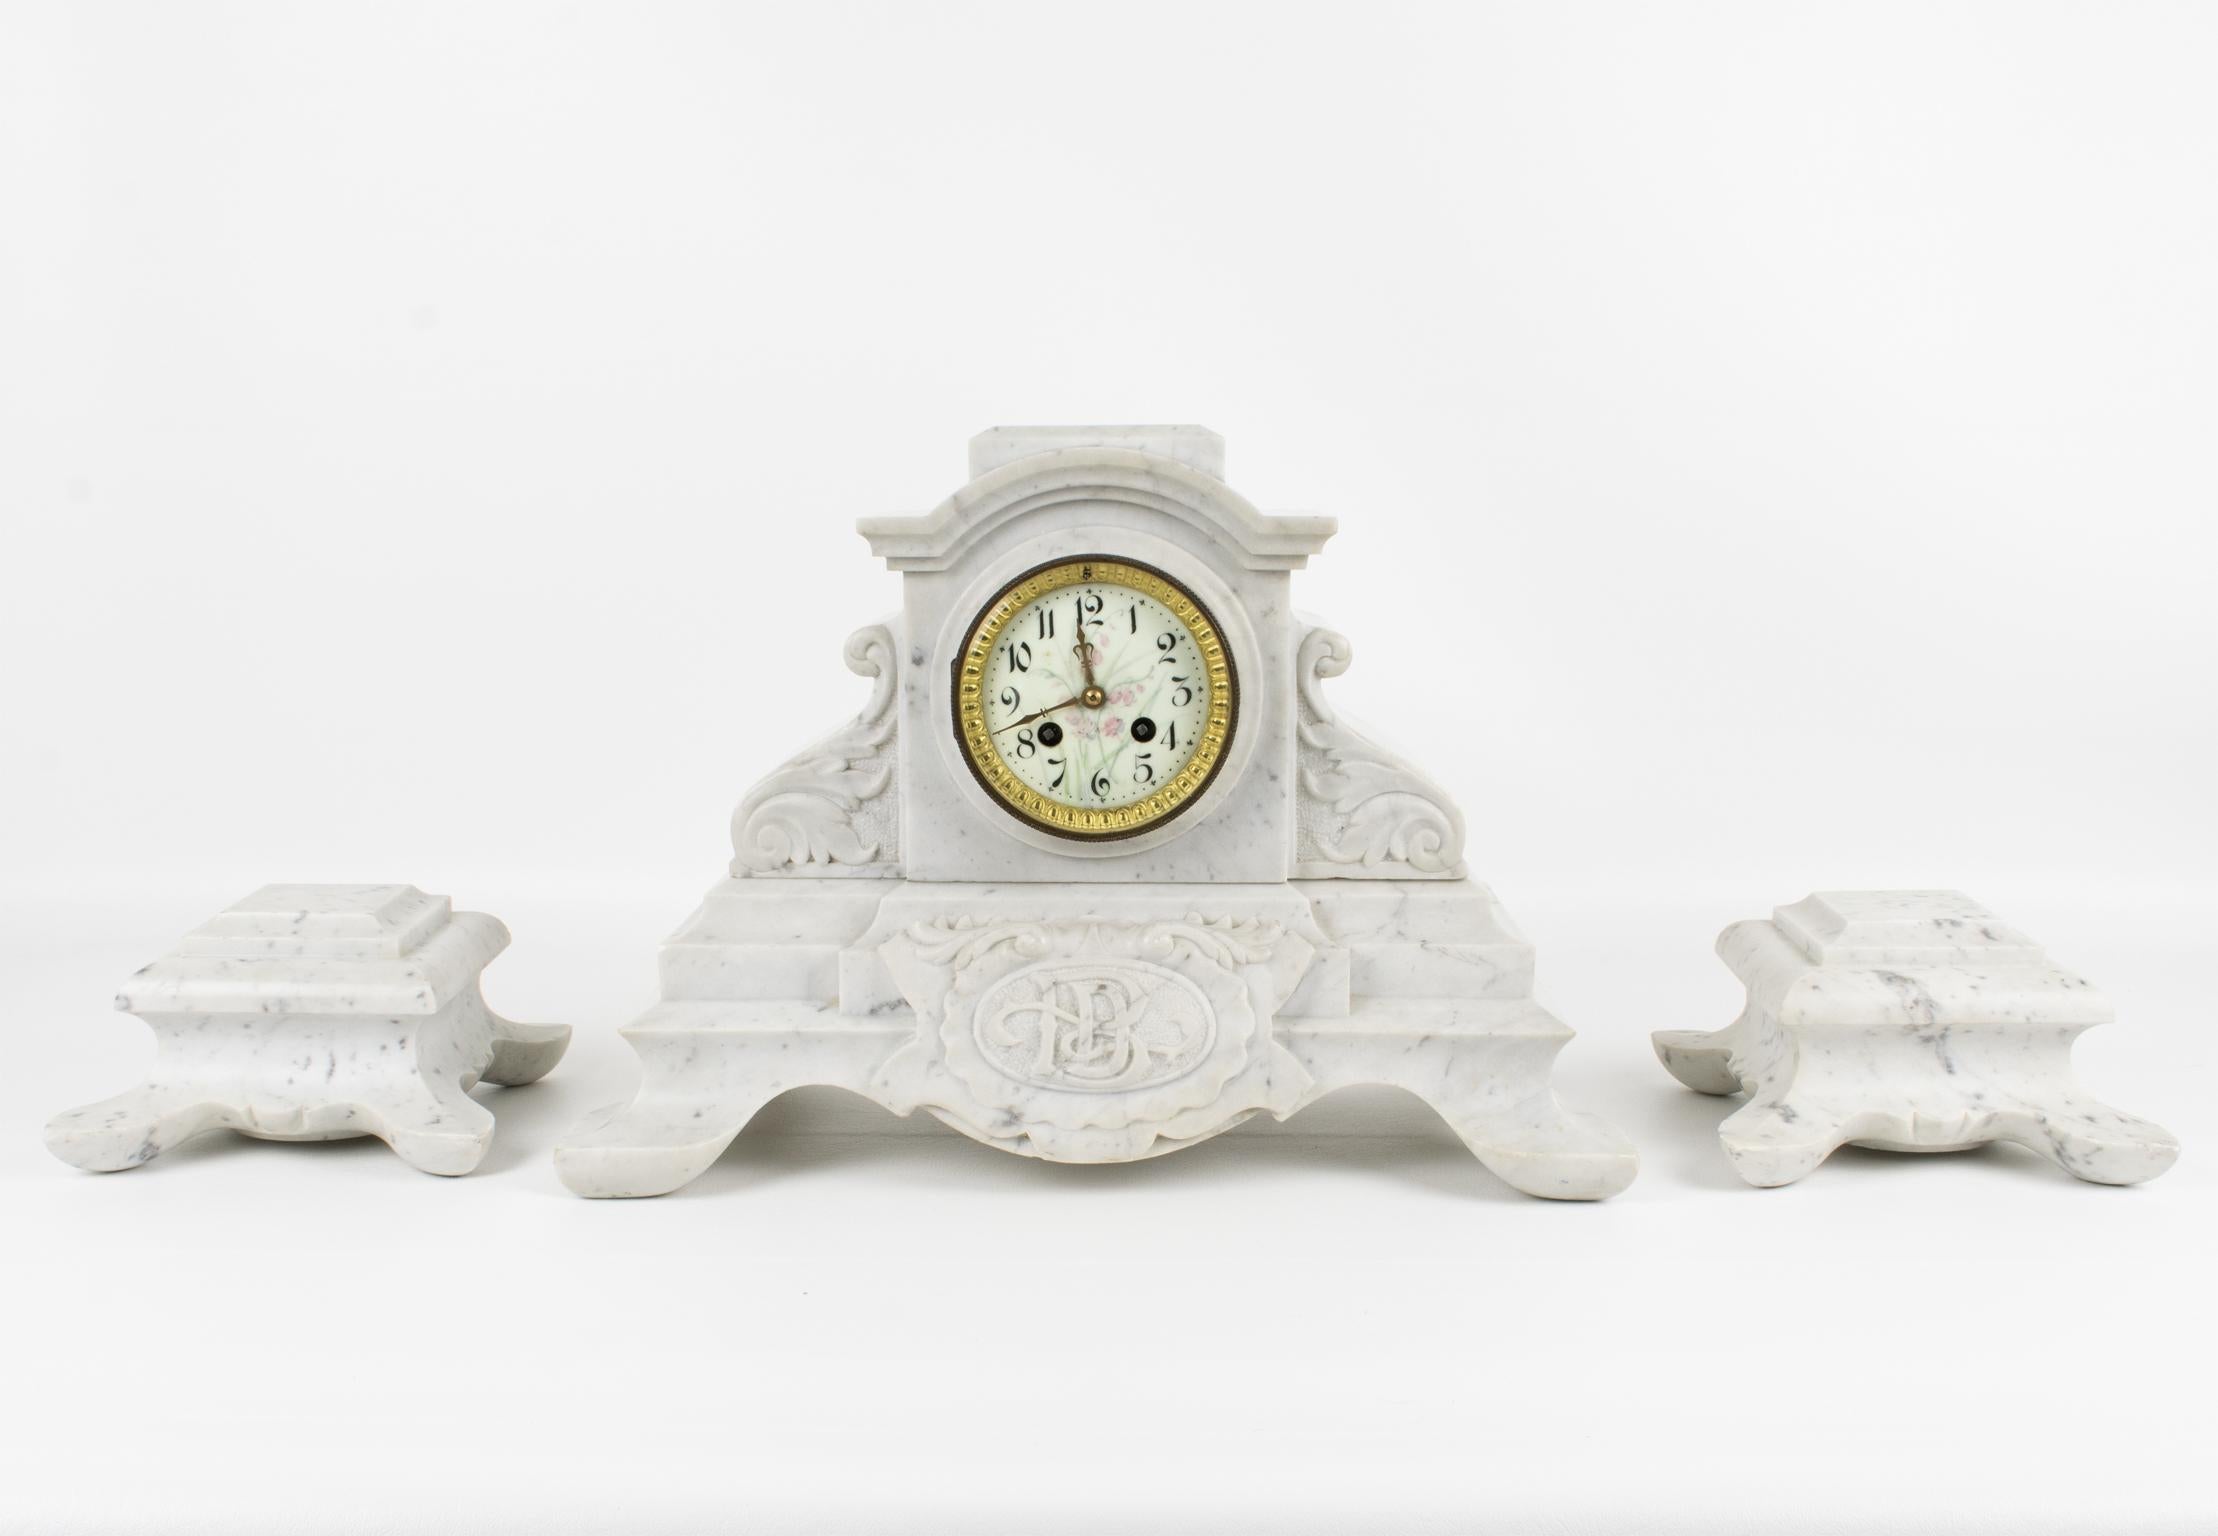 Diese exquisite Kaminsimsuhr aus weißem Carrara-Marmor von J. Bondat France aus dem 19. Jahrhundert ist ein beeindruckender und seltener Zeitmesser französischer Handwerkskunst. Das Set ist handgeschnitzt mit einem neoklassischen geometrischen